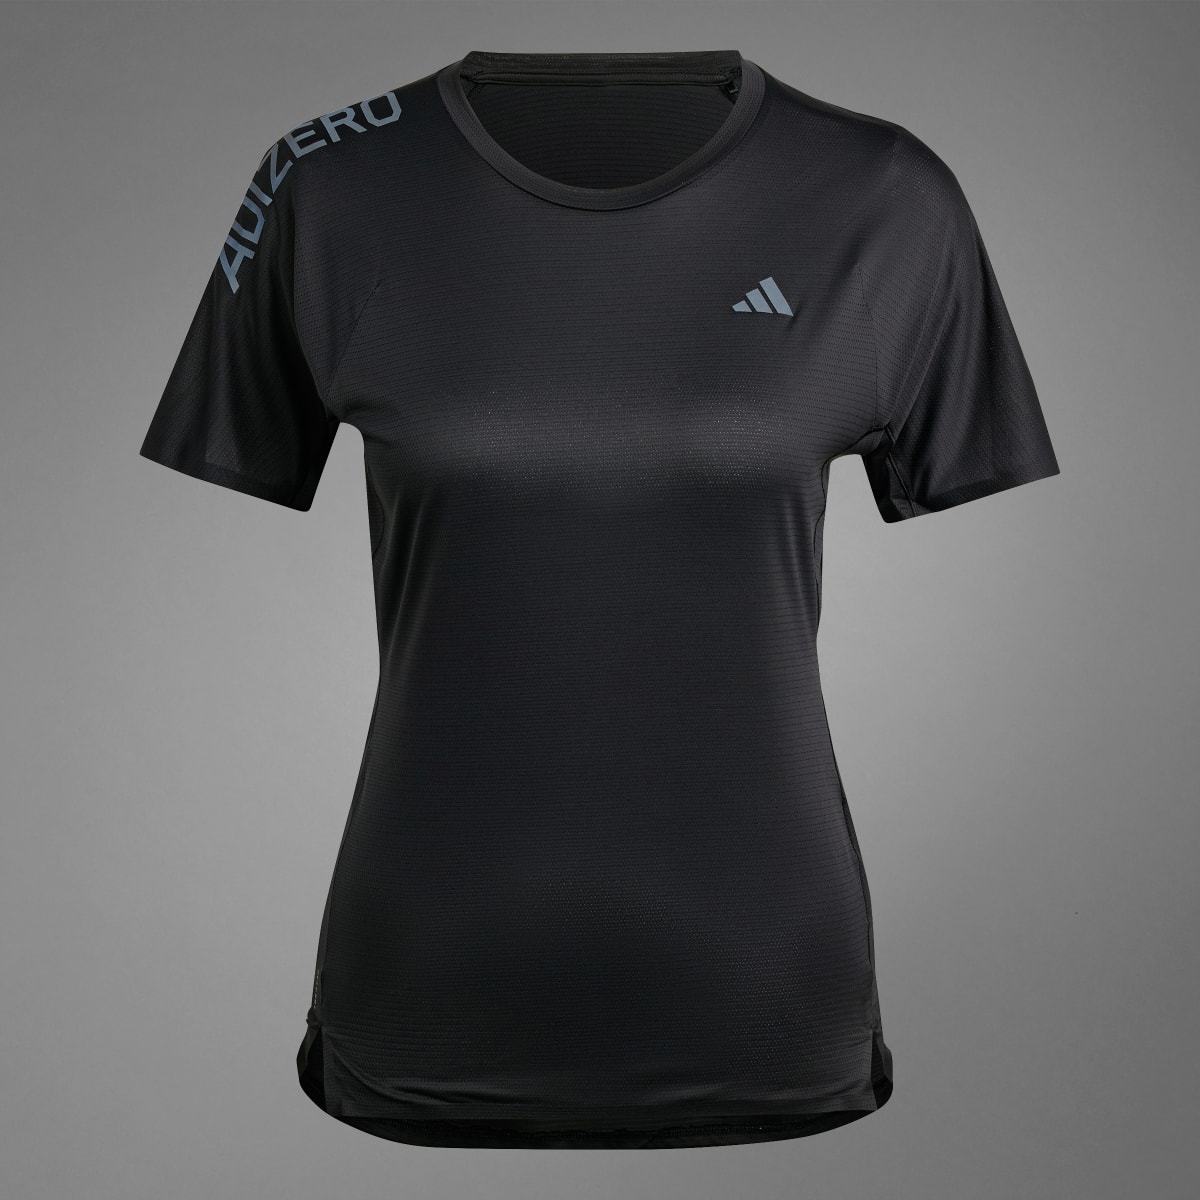 Adidas Adizero Running T-Shirt. 11